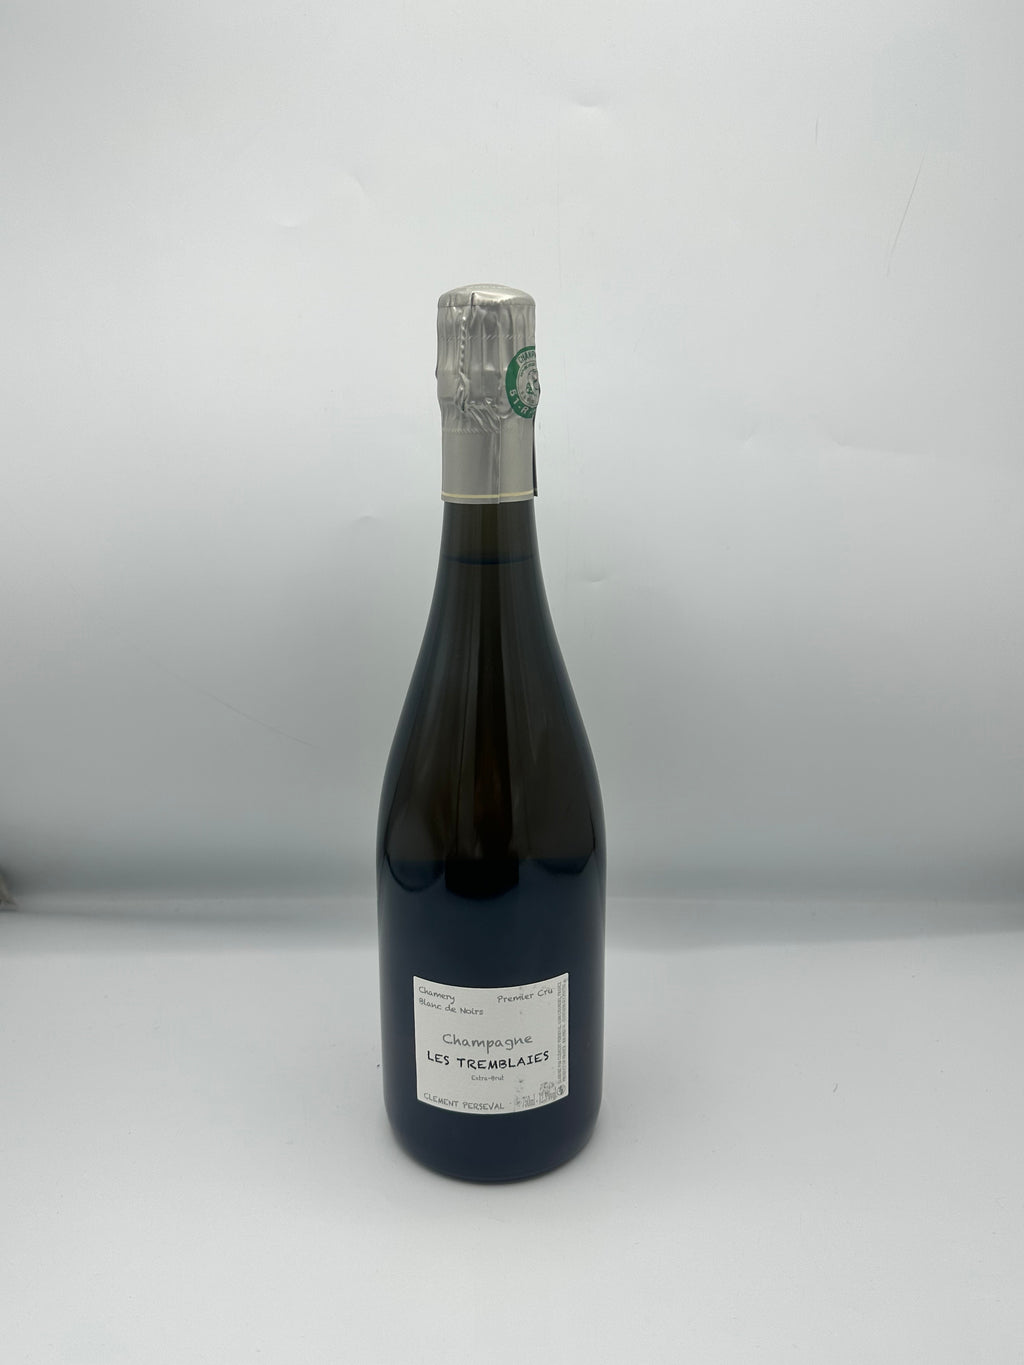 Champagne Premier Cru Blanc de Noirs Extra Brut 2015 "Les Tremblaies" - Clément Perseval - Clément Perseval